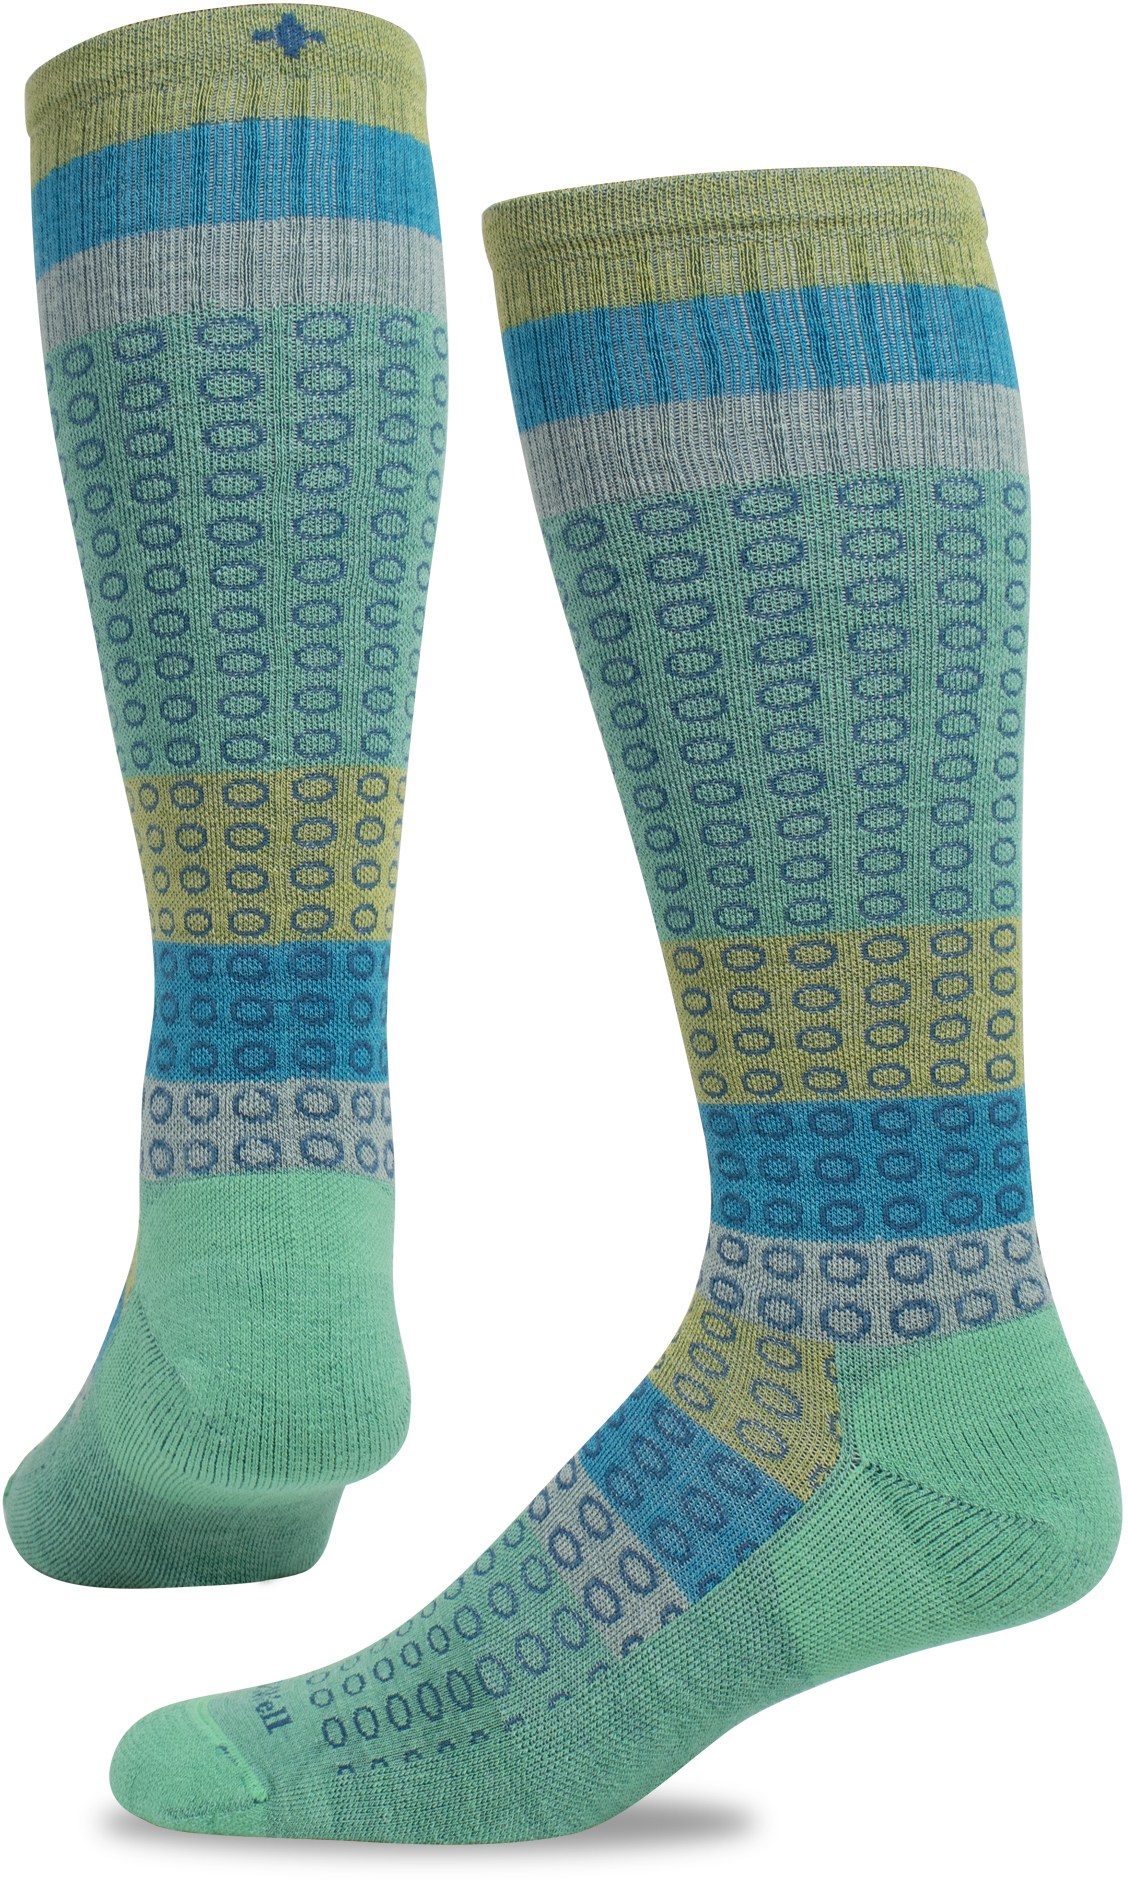 Компрессионные носки полного круга, широкие по размеру икры, женские Sockwell, зеленый forest full circle